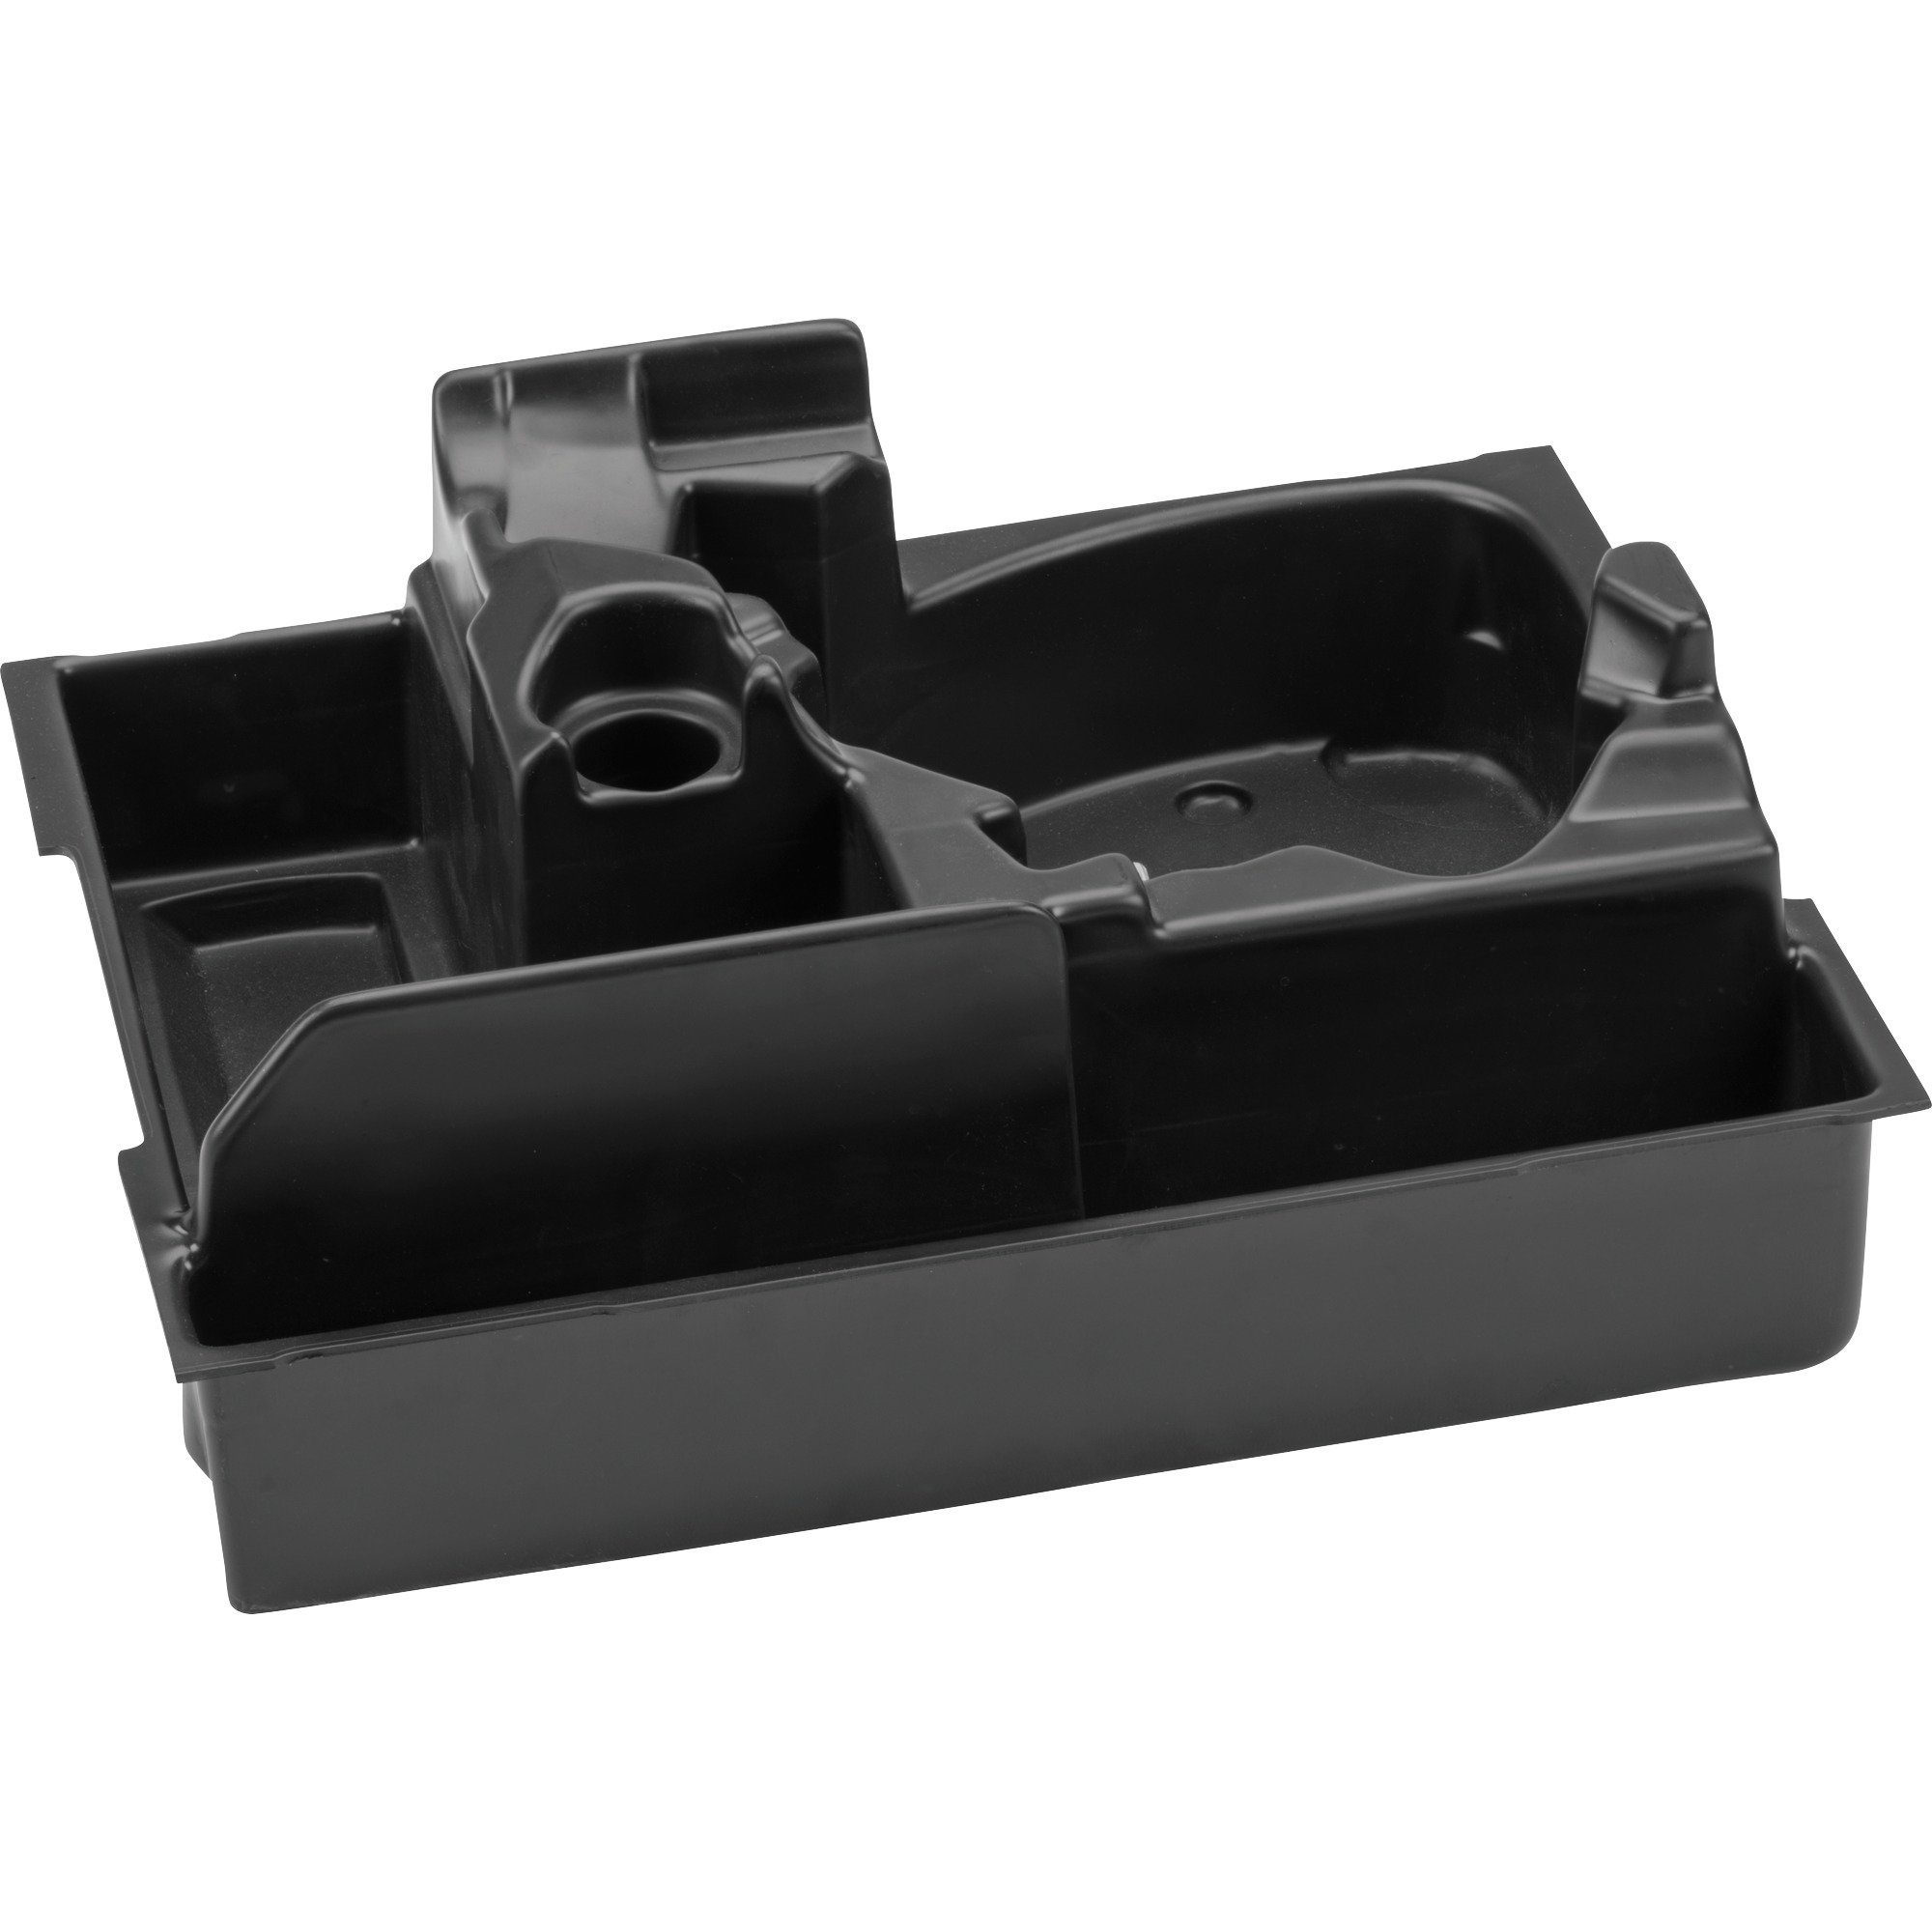 für Bosch Professional 36 GBH BOSCH L-Boxx Einlage Werkzeugbox